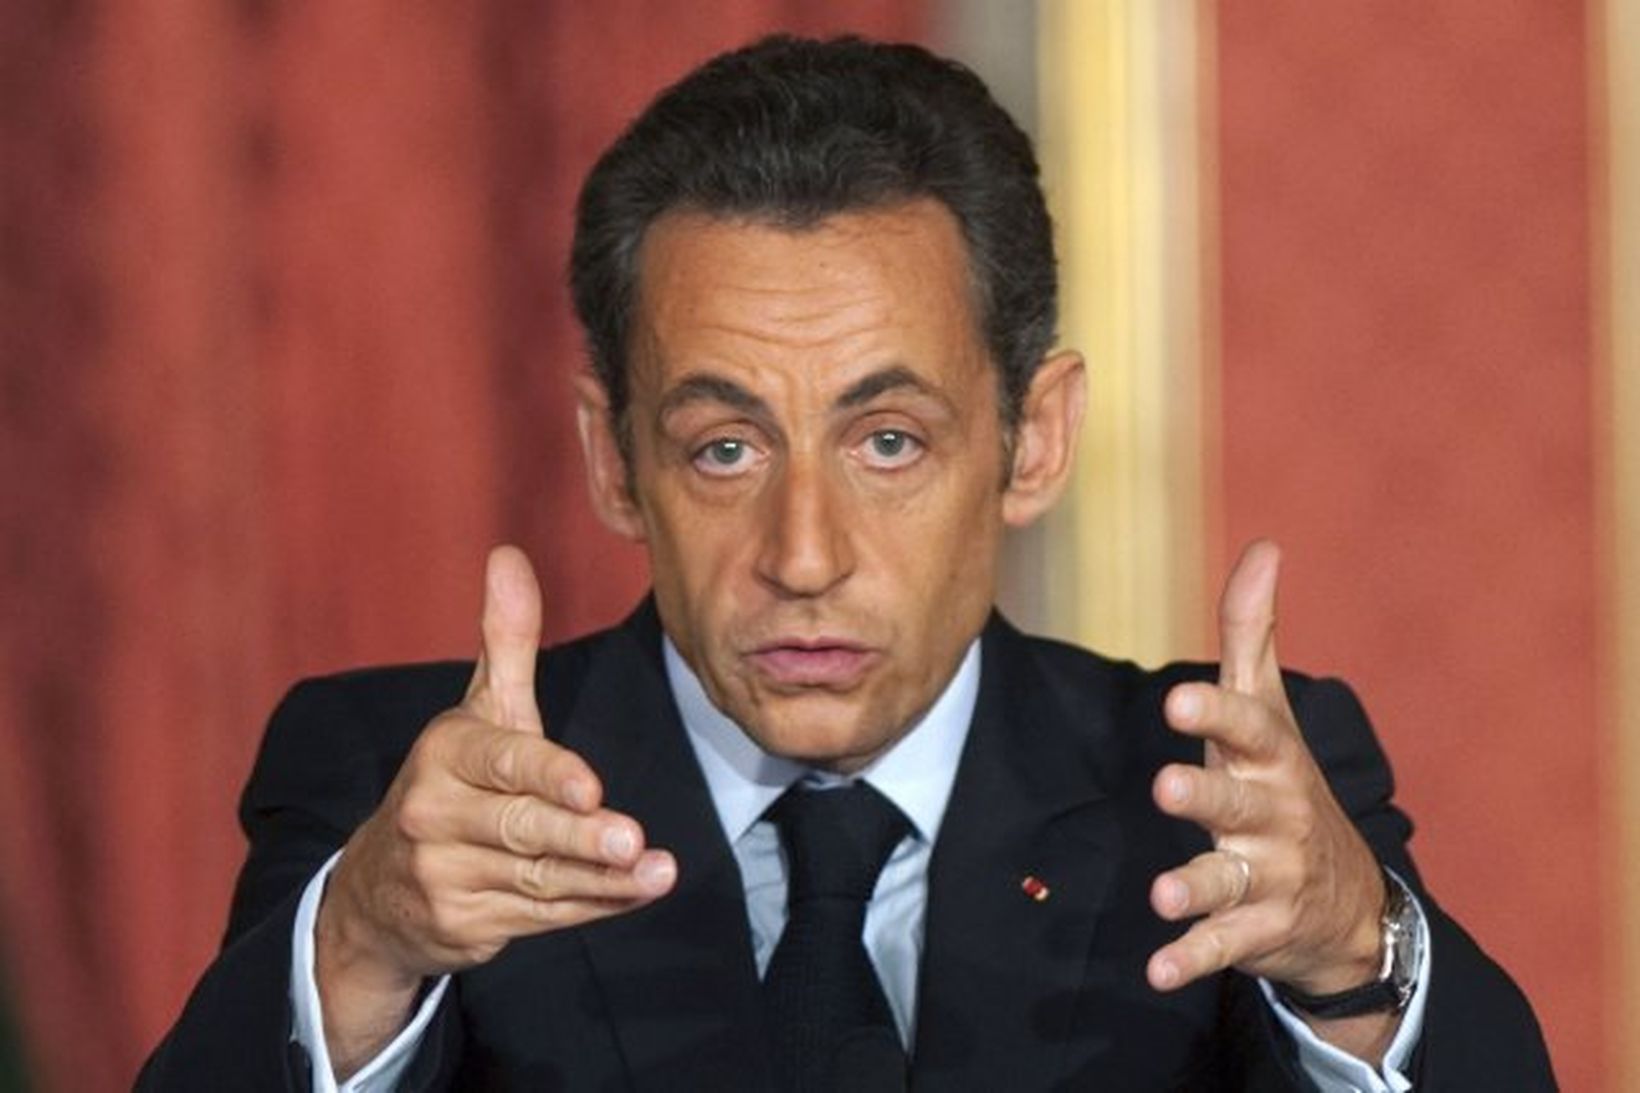 Nicolas Sarkozy, forseti Frakklands.